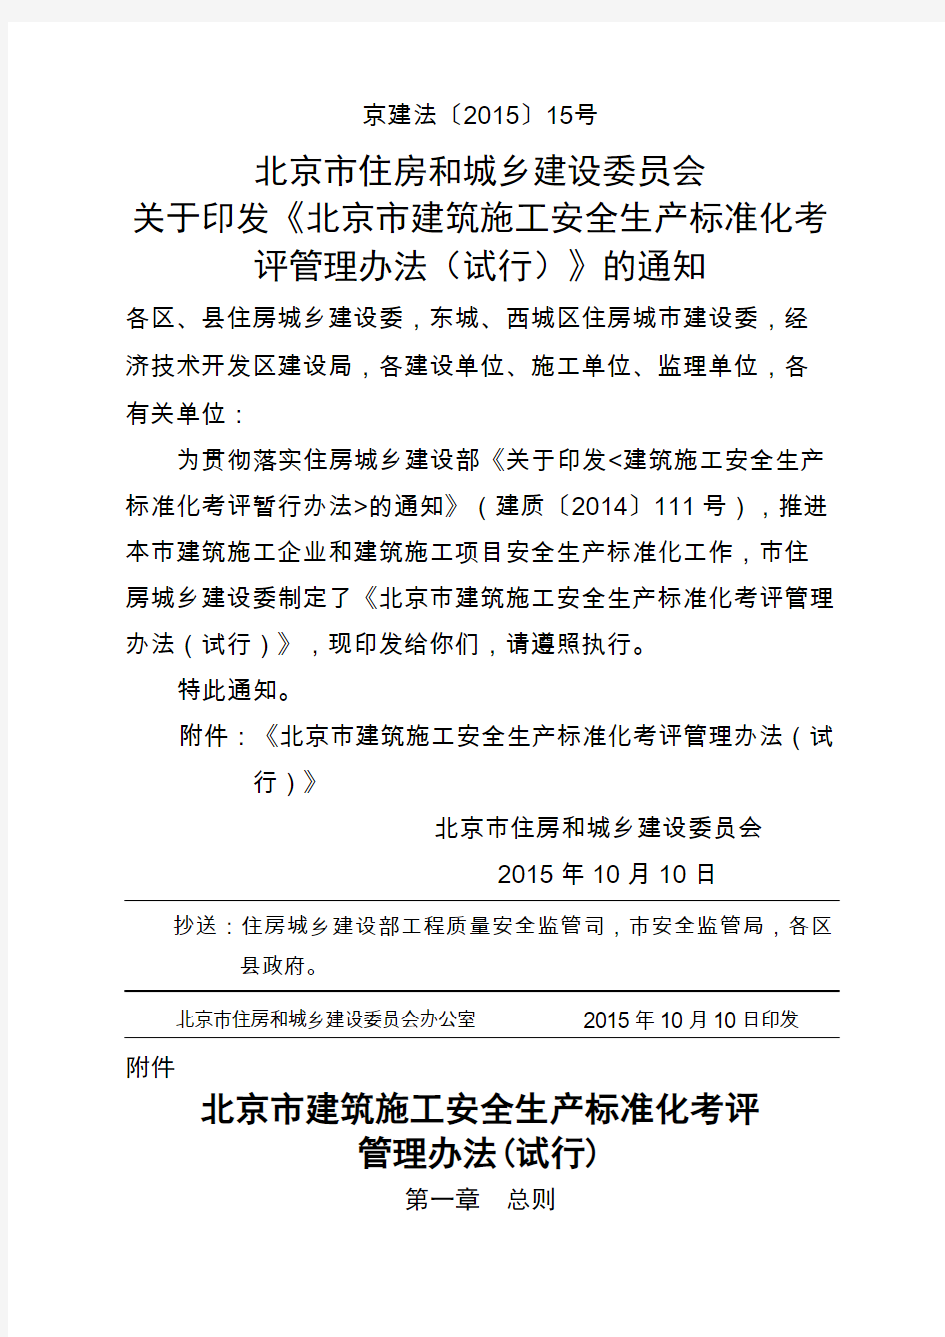 北京市建筑施工安全生产标准化考评管理办法试行京建法号